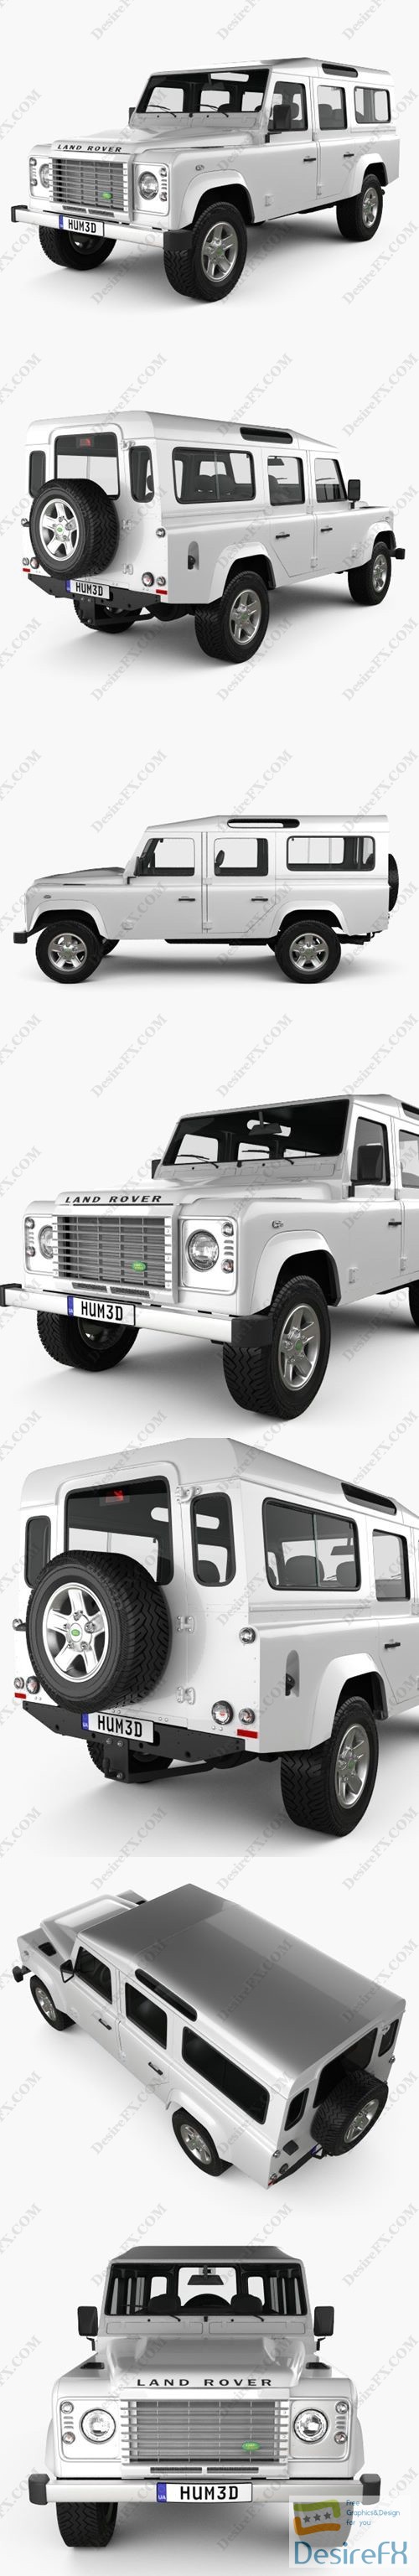 Land Rover Defender 110 Station Wagon 2011 3D Model